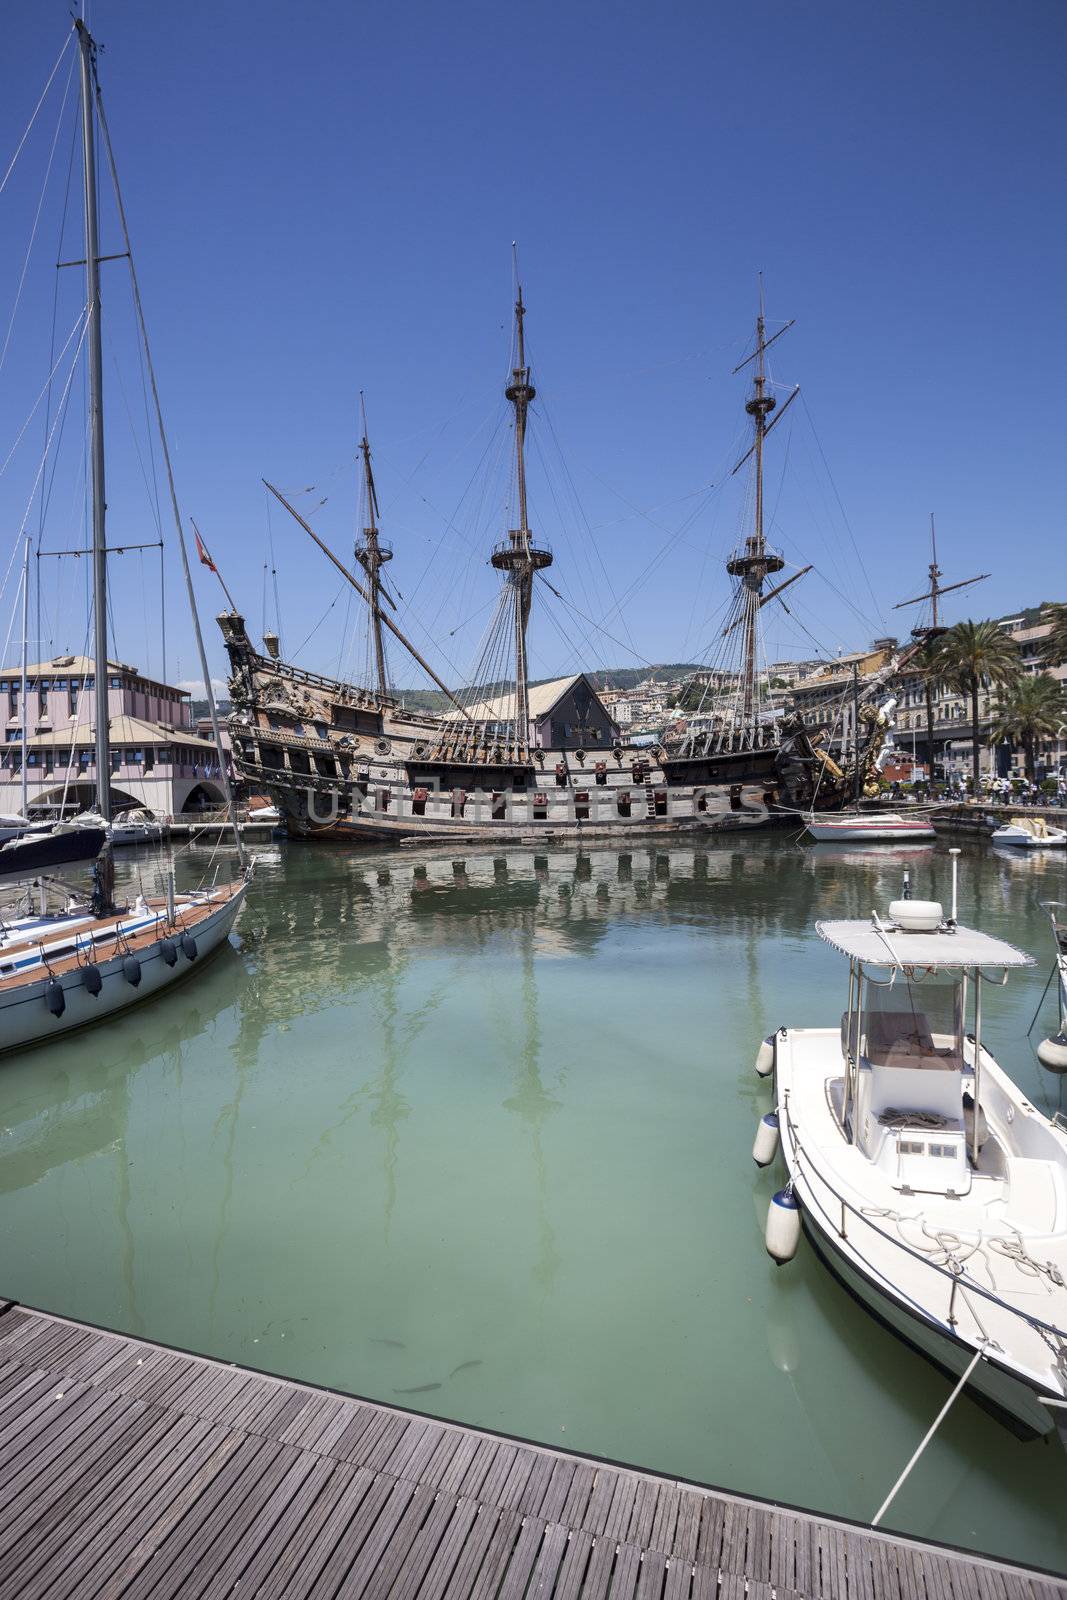 GENOA, ITALY - June 16: Replica of a 17th-century Spanish galleon on June 16, 2012, Genoa, Italy. The Neptune was used in 1985 for Roman Polanski's film Pirates